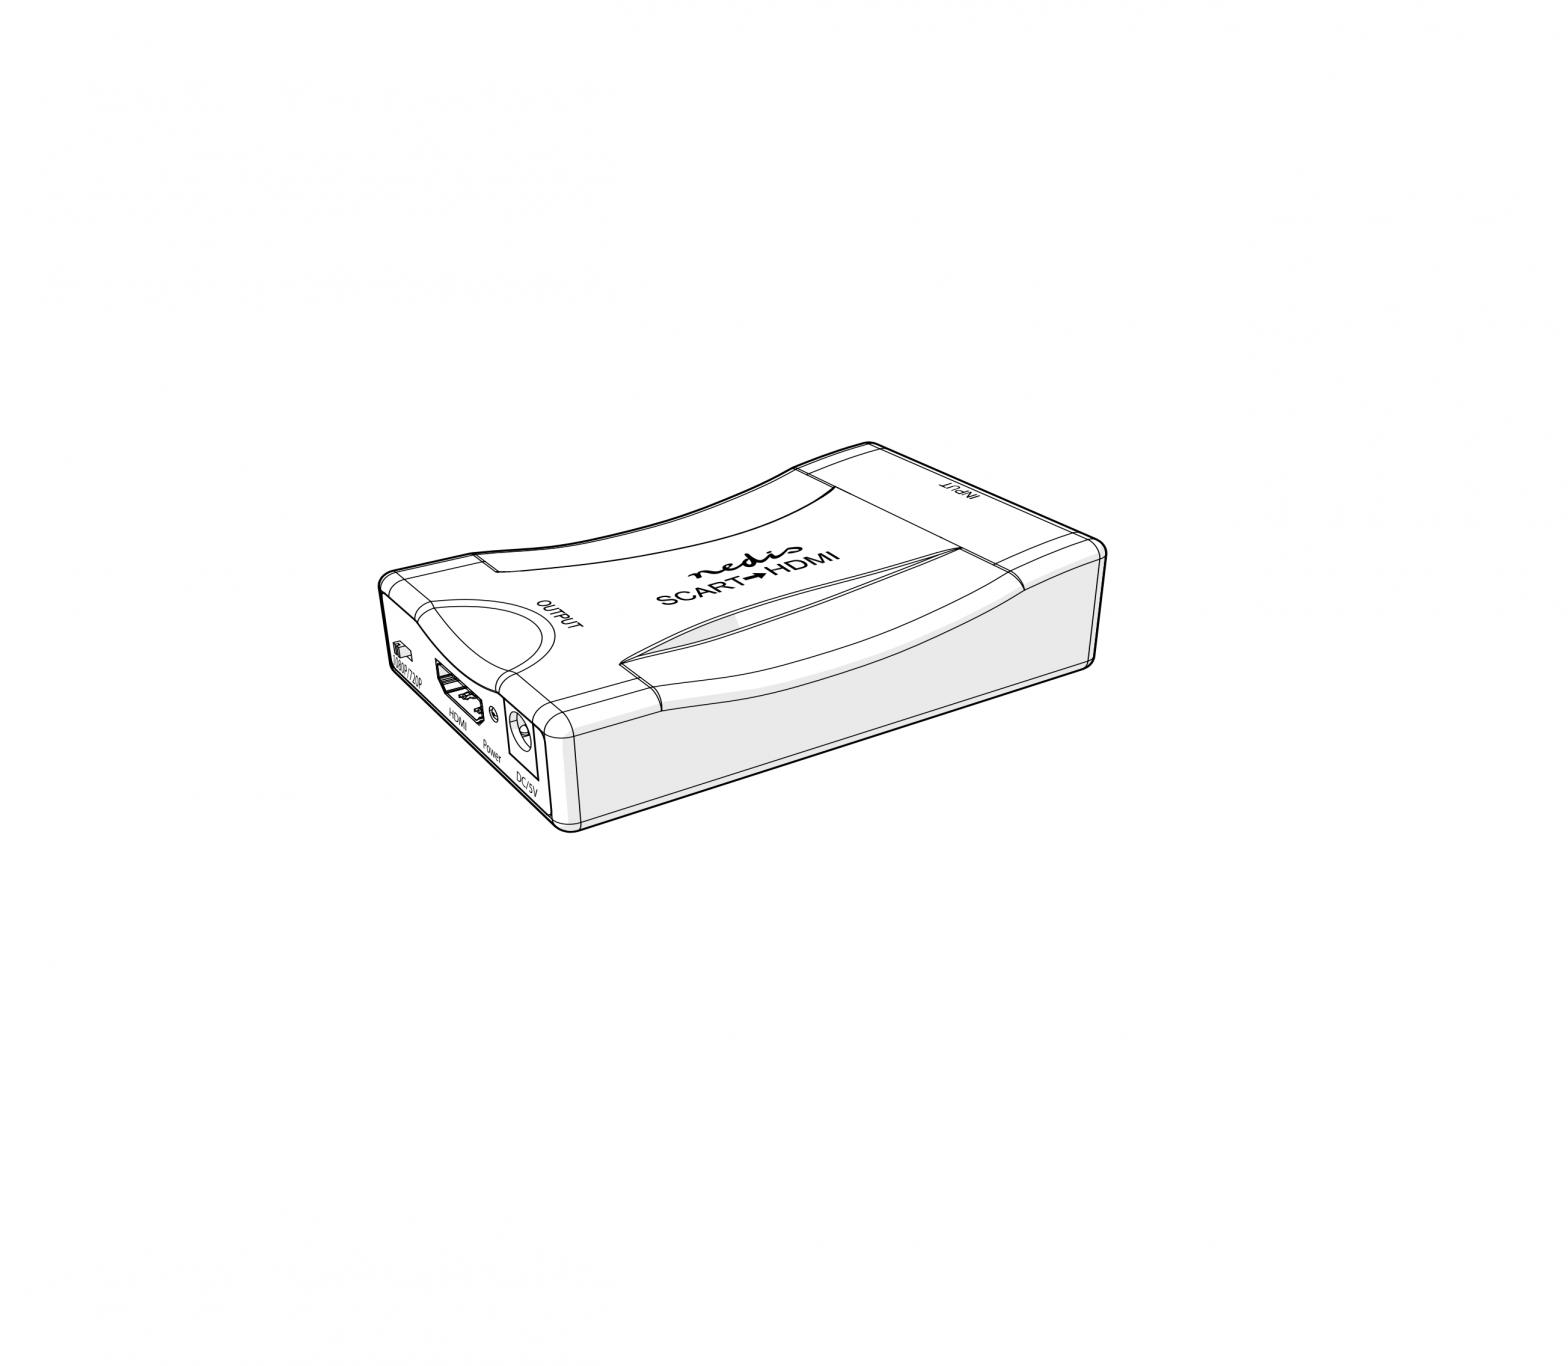 nedis HDMI Converter User Guide